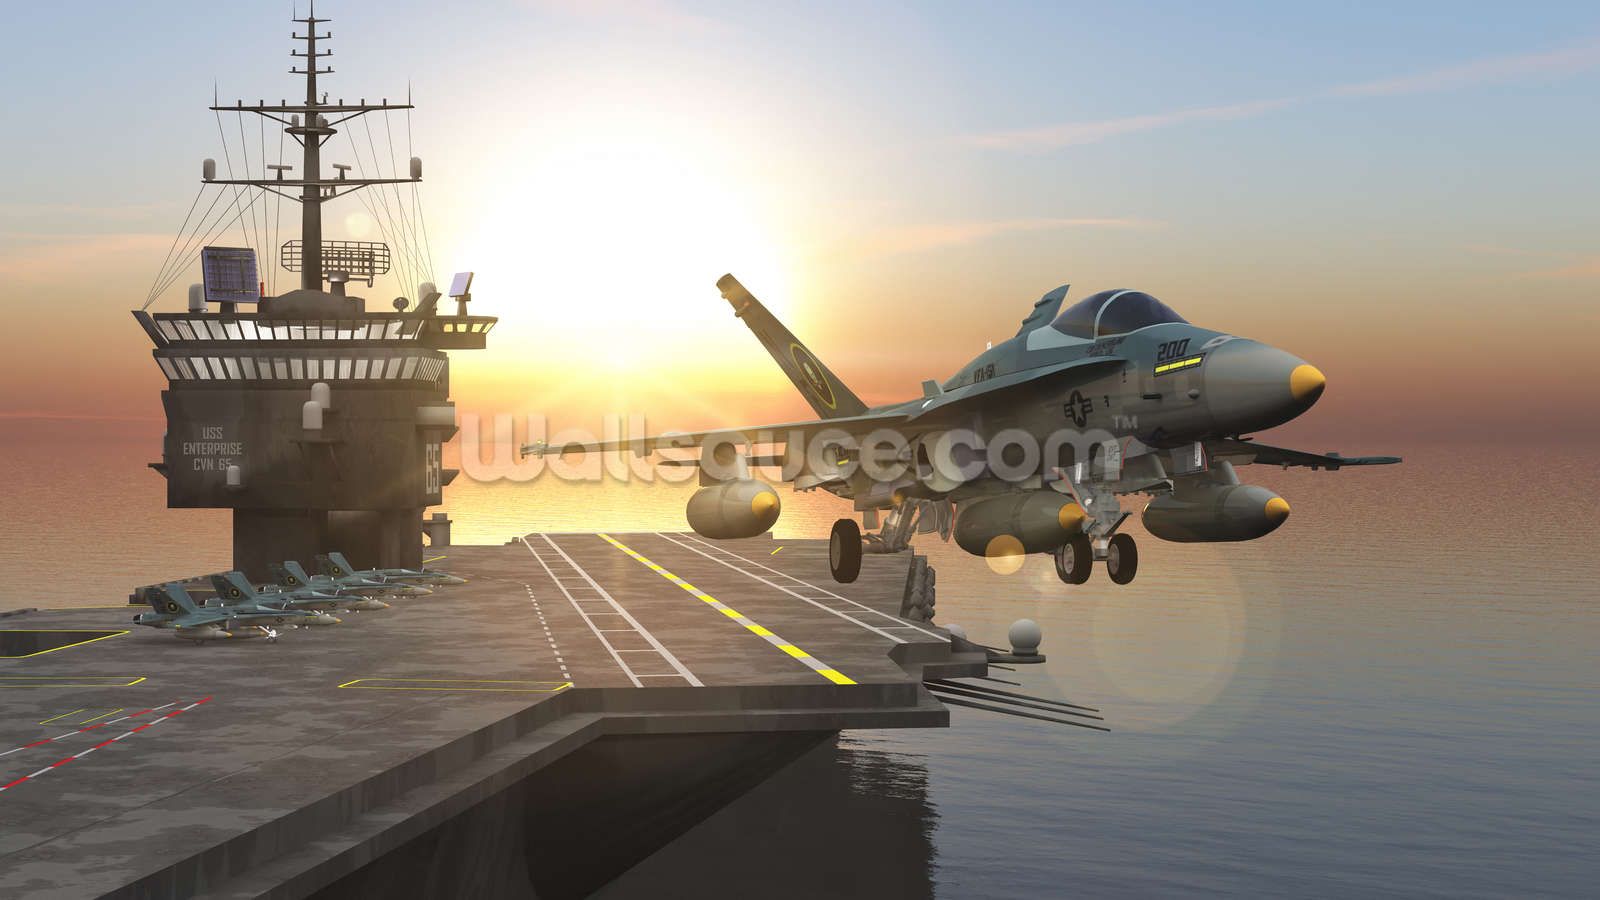 Aircraft Carrier Wallpaper. Wallsauce EU. Aircraft carrier, Royal navy aircraft carriers, Lego aircraft carrier